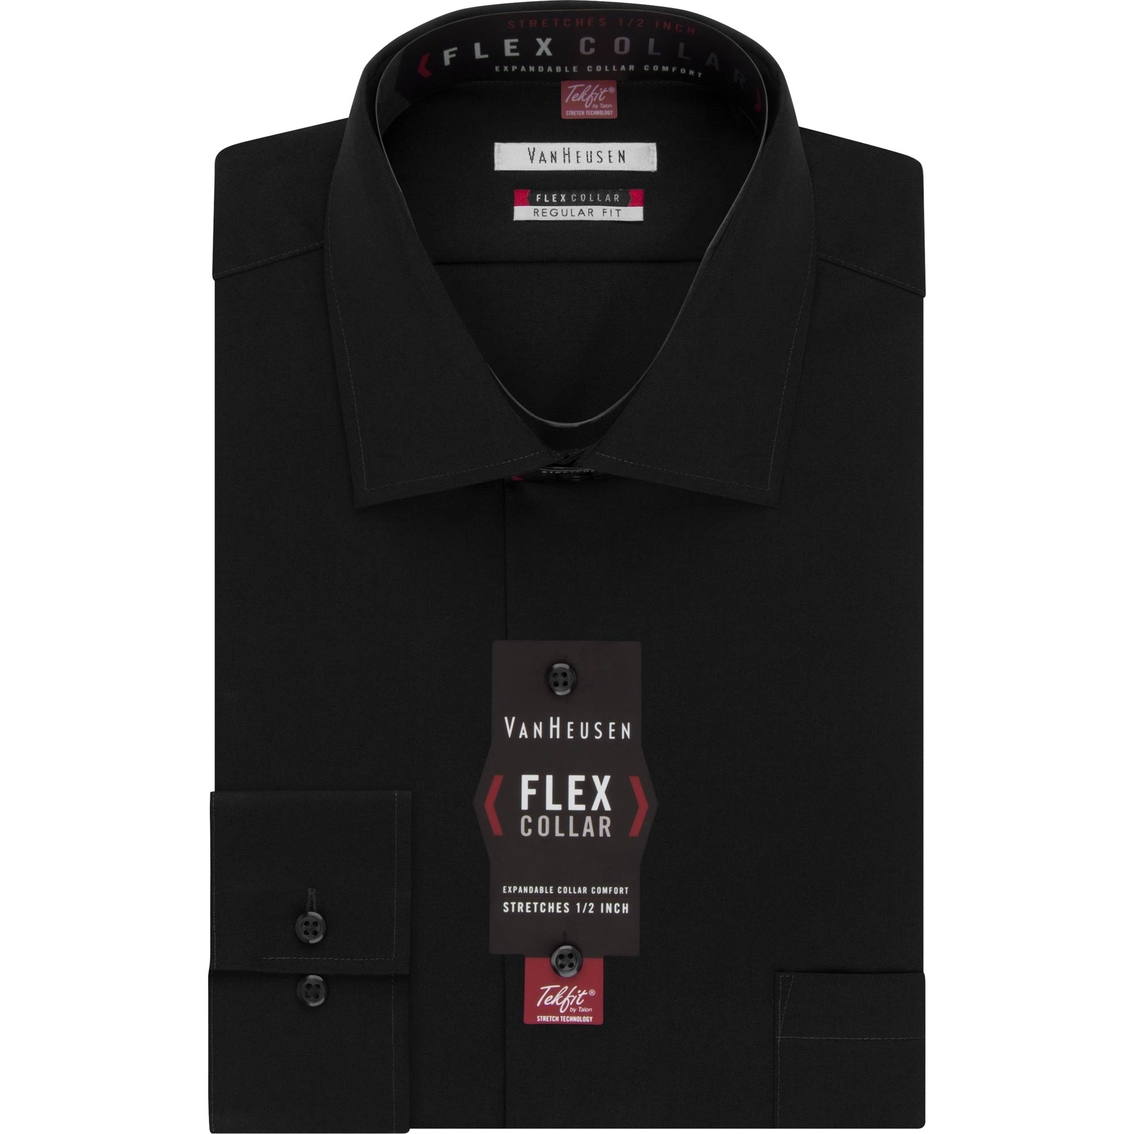 Van Heusen Tall Fit Flex Collar Dress Shirt - Image 2 of 2